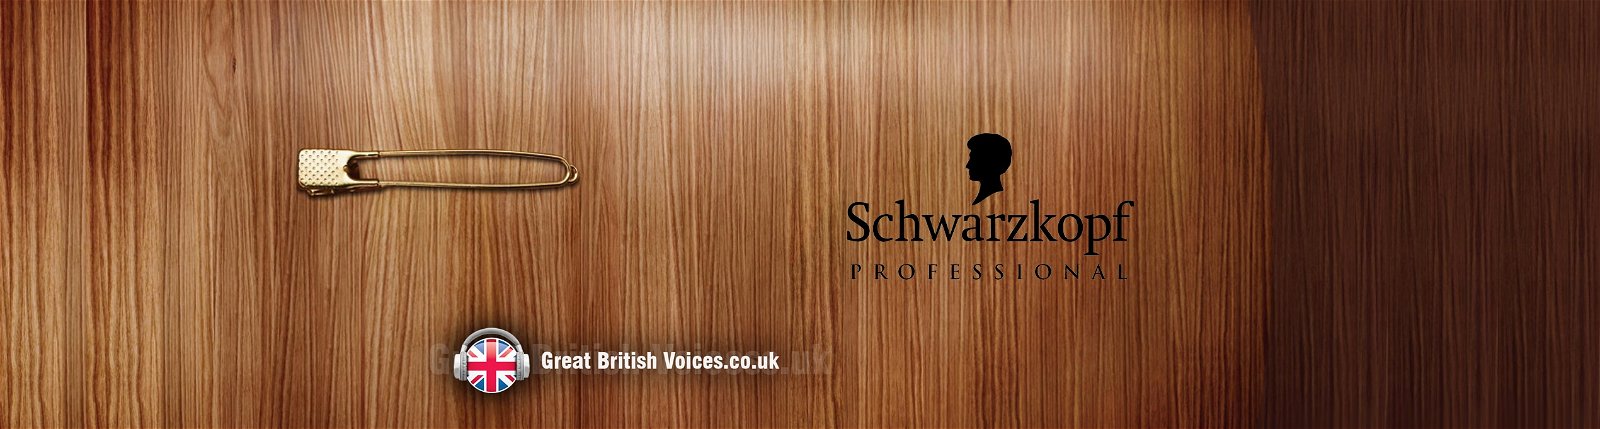 Schwarzkopf Professional voiceover at Great British Voices